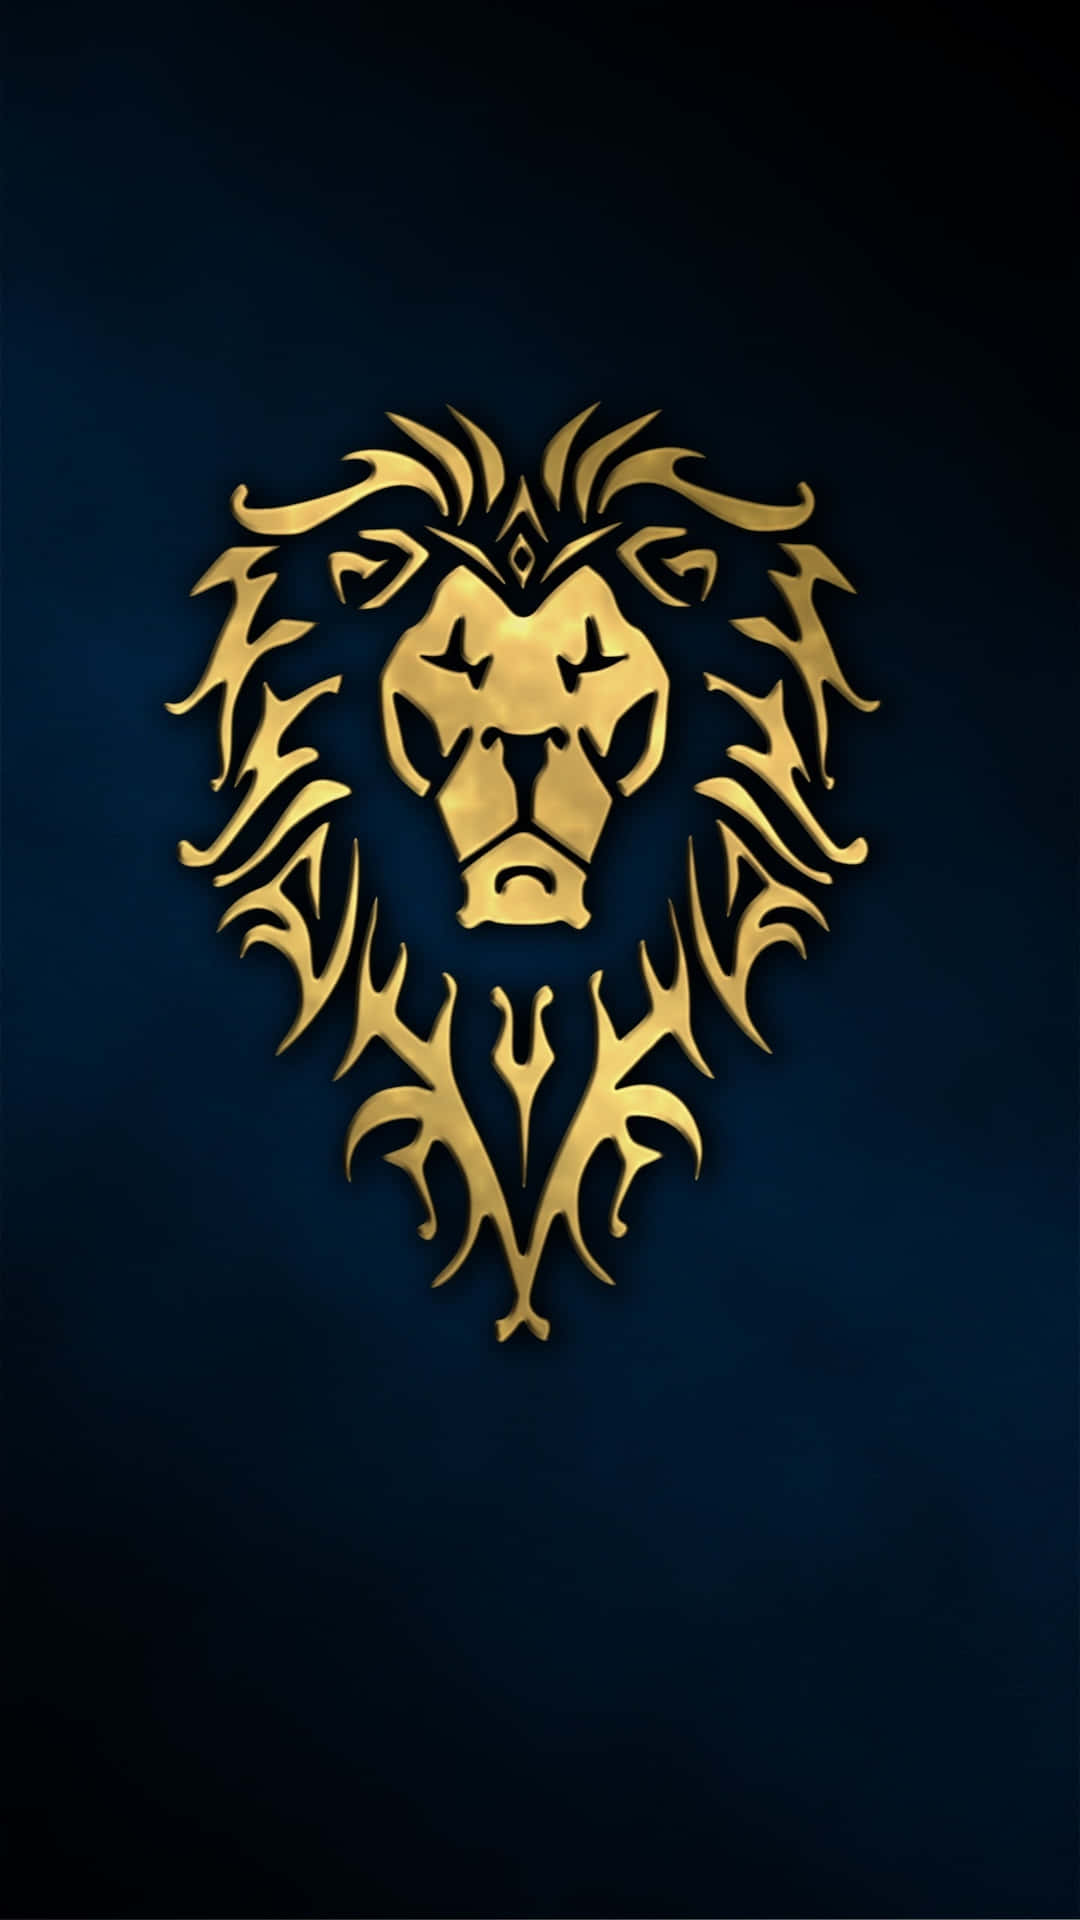 Golden Lion Artworkon Dark Background Wallpaper